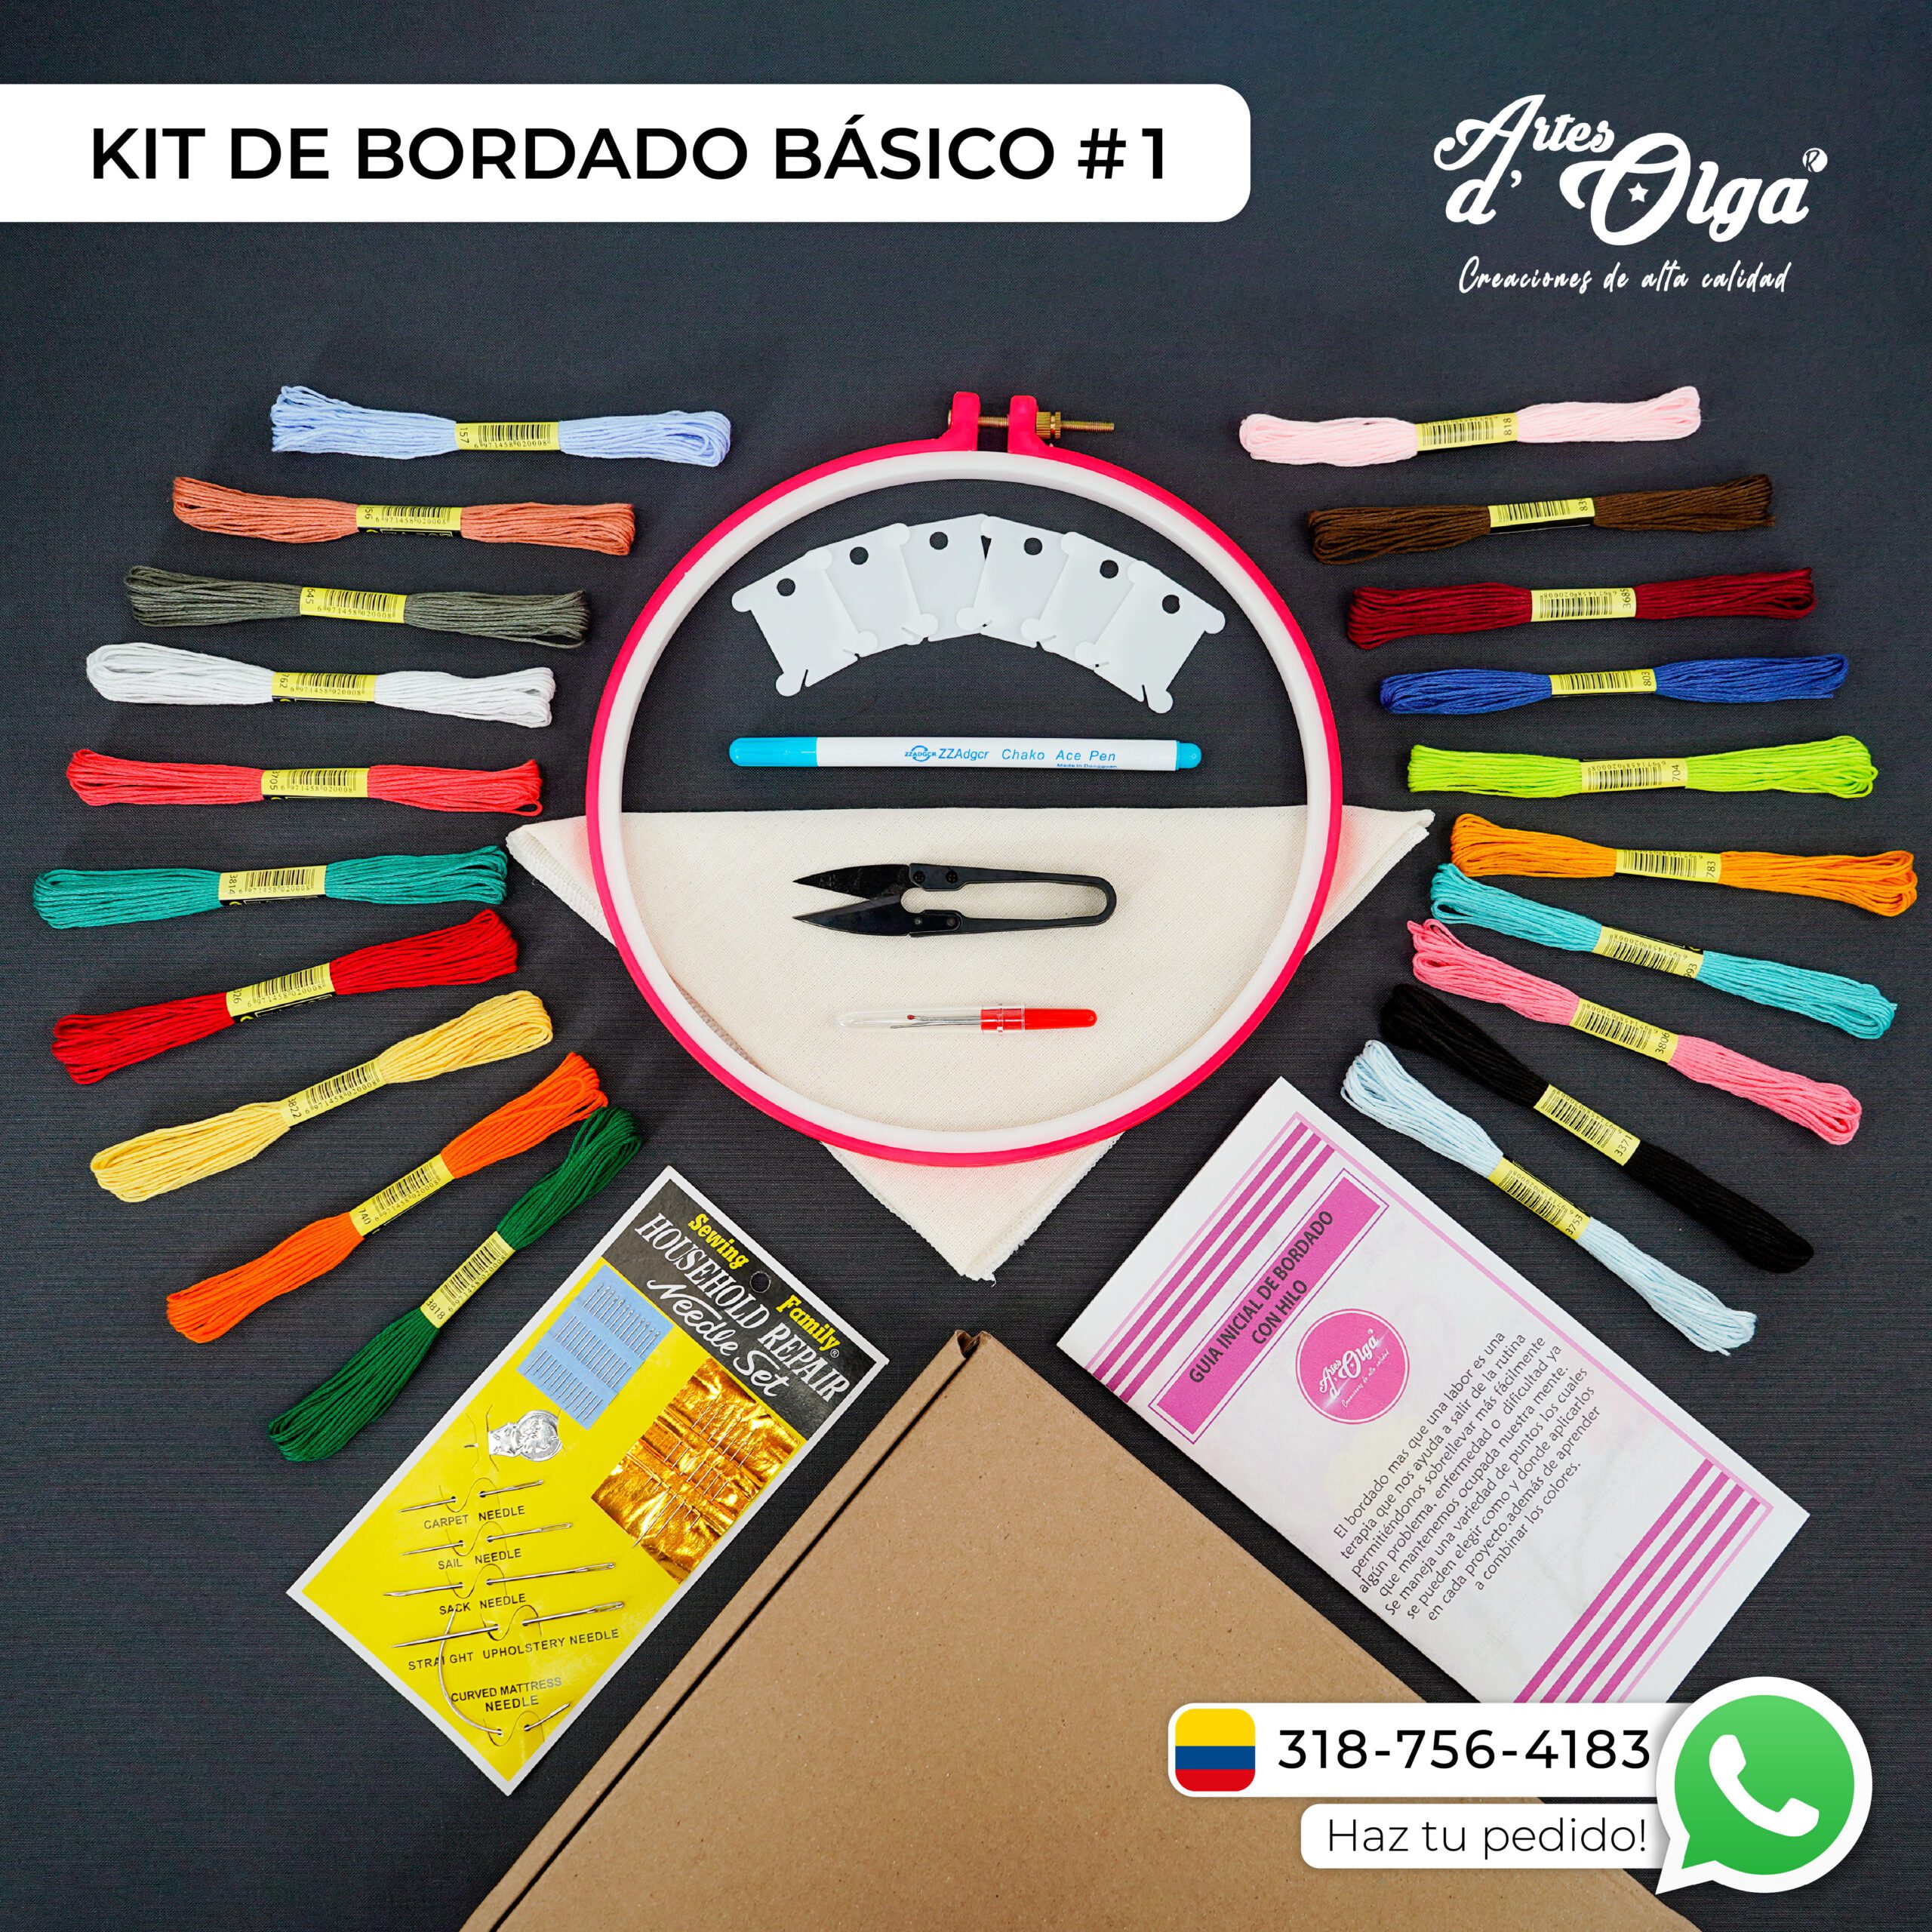 Kit de Bordado Básico #1 – Artesd'Olga - Kits de Bordados